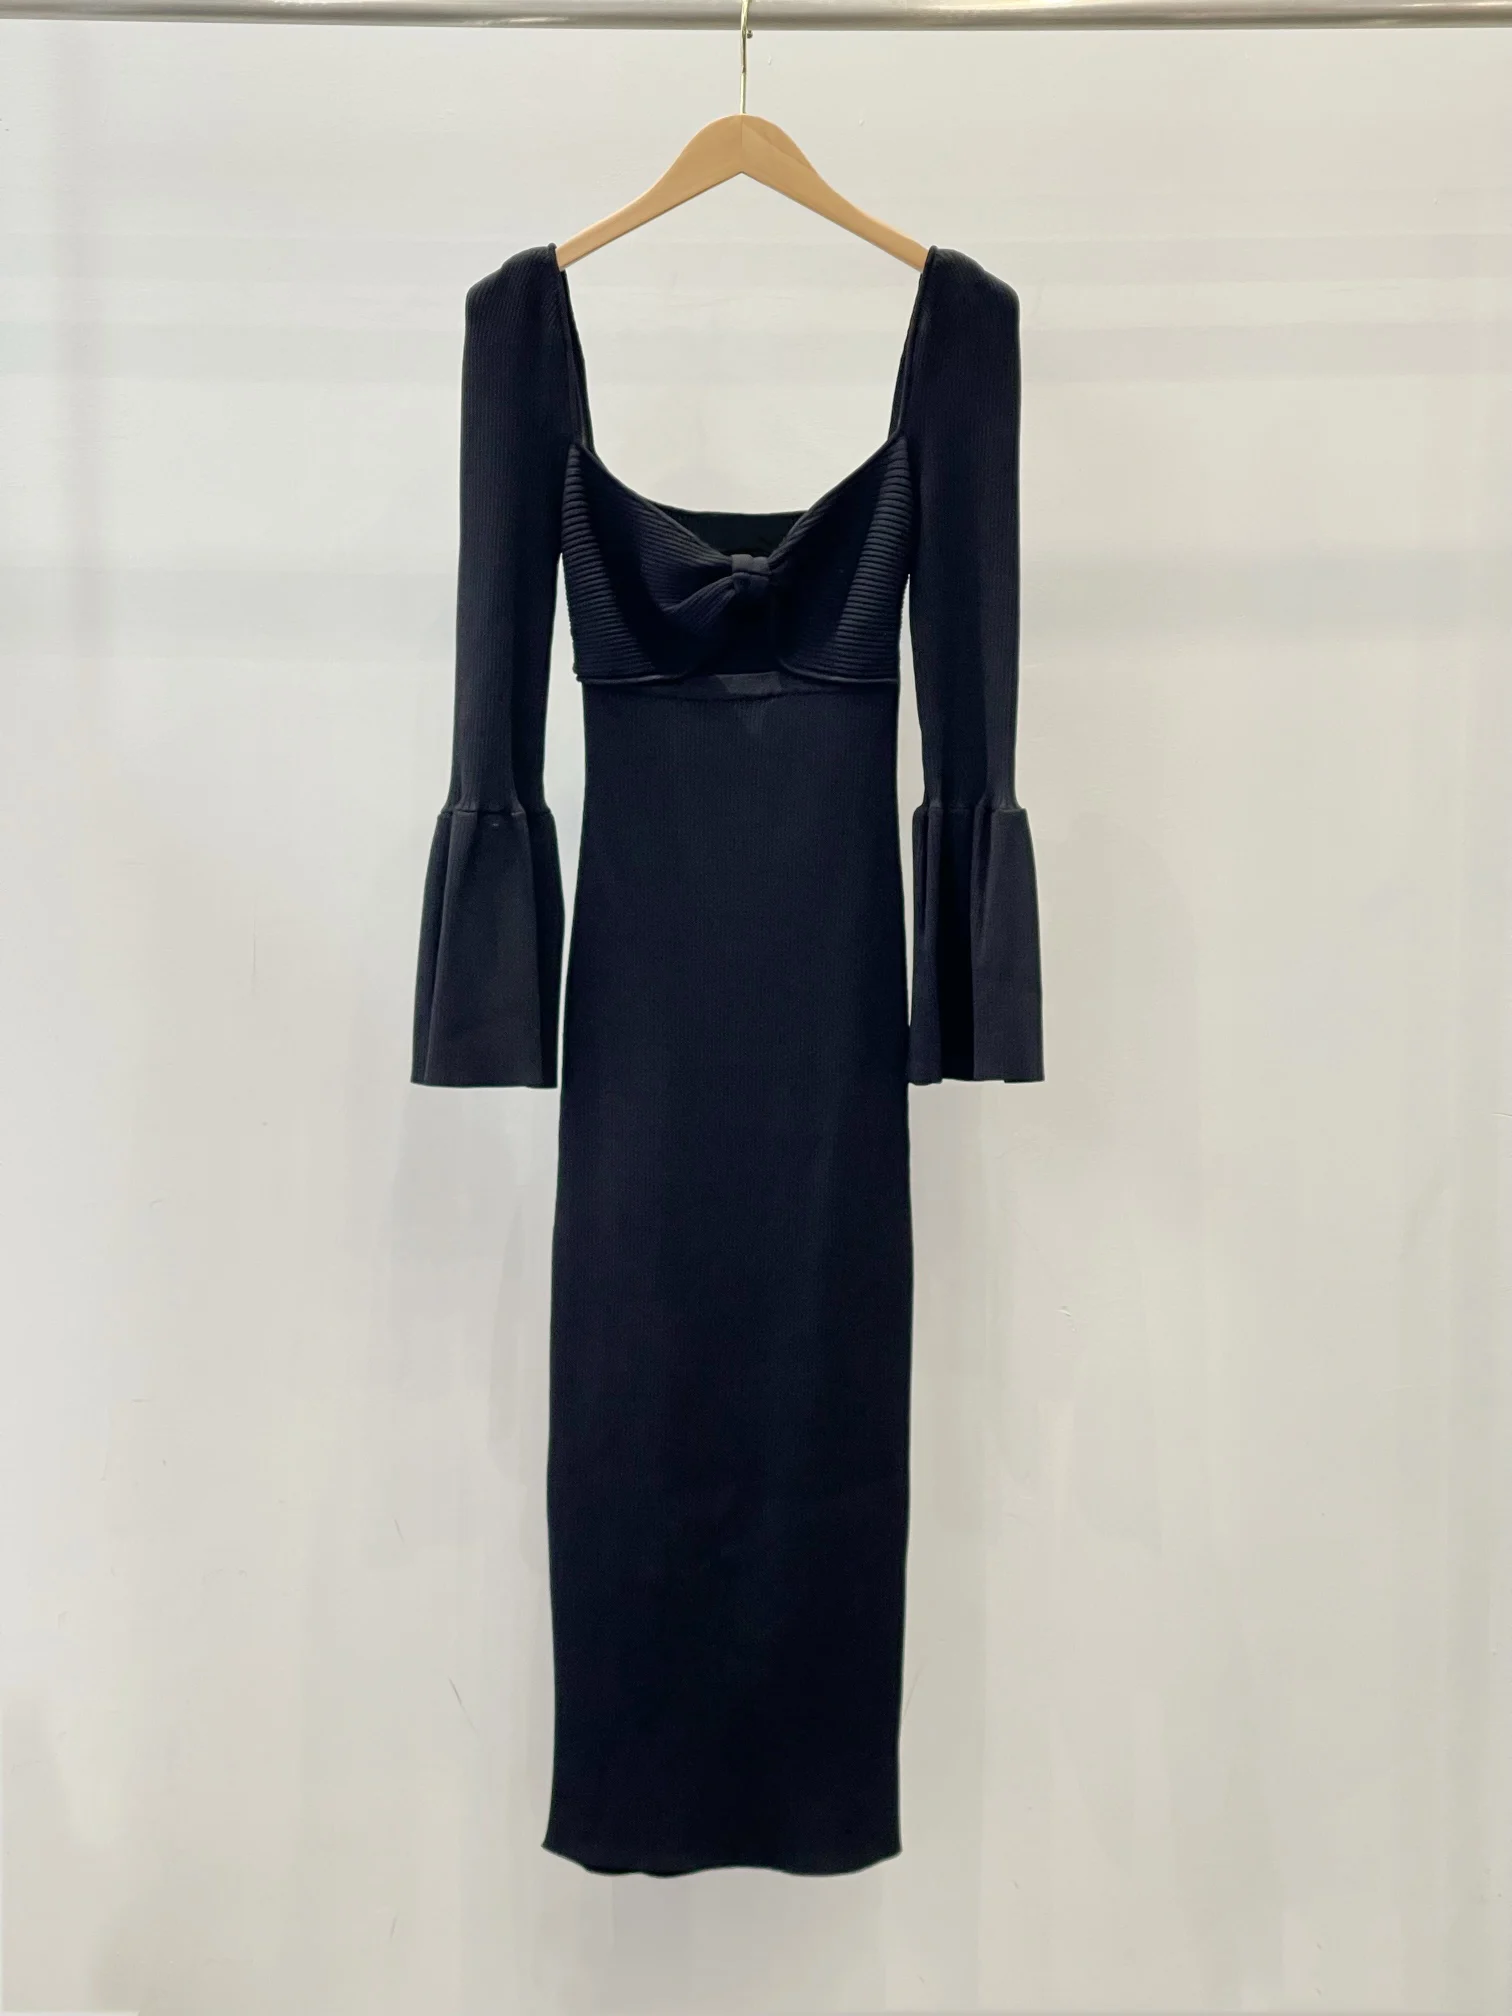 Новое трикотажное платье-бант в рубчик с классической черной длинной юбкой, расклешенными манжетами, романтичное и элегантное